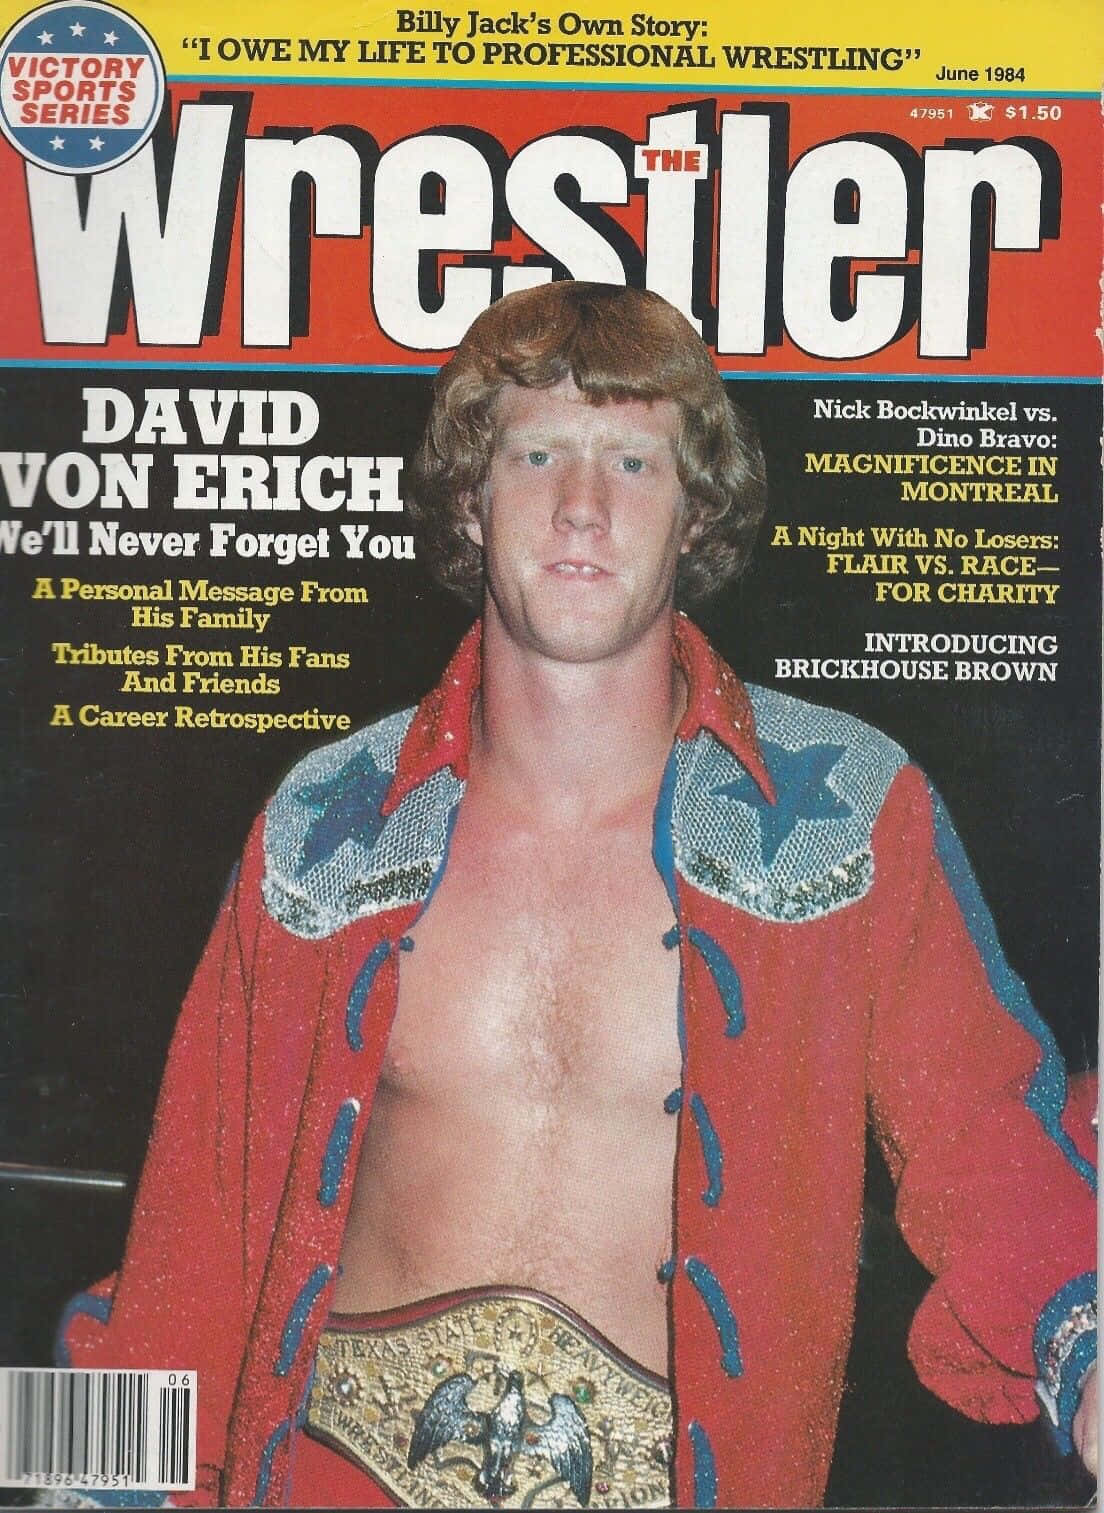 Amerikansk wrestler David Von Erich 1984 Magazine Cover Wallpaper Wallpaper